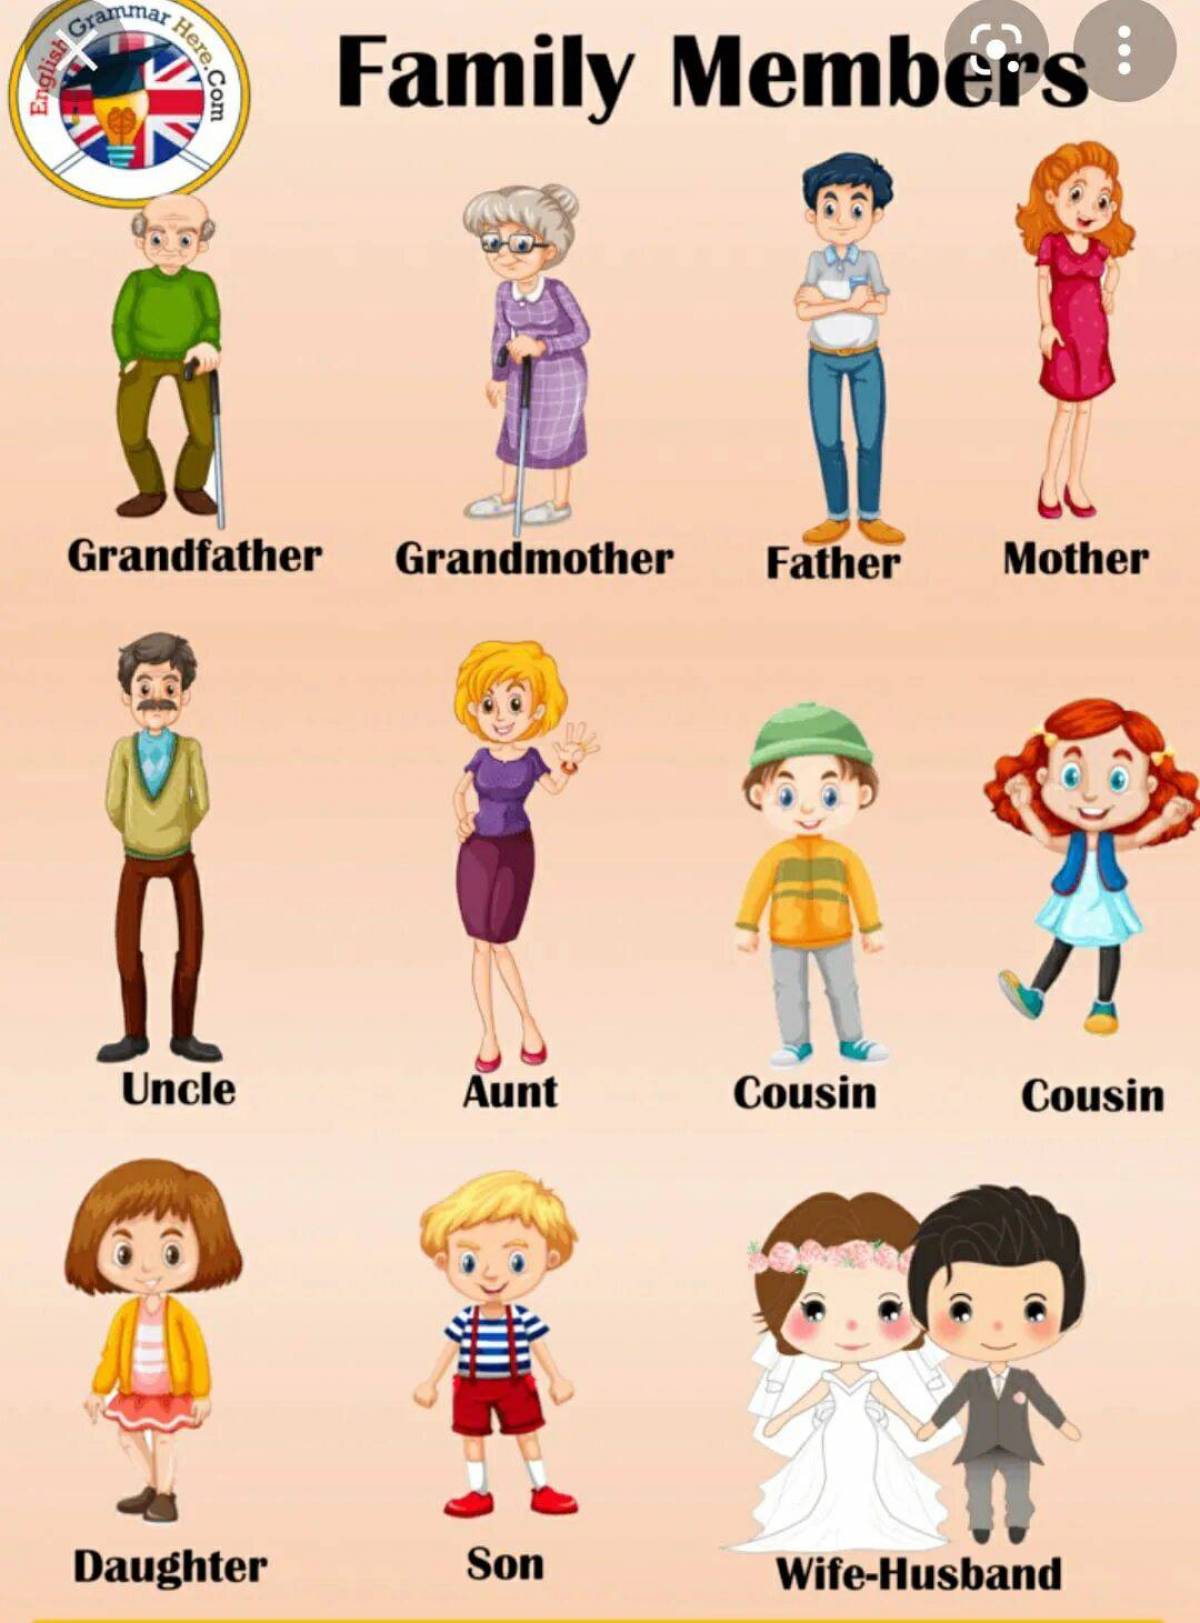 Family words vocabulary. A member of the Family. Семья на английском для детей. Family Vocabulary английский. Семья по англ для дошкольников.